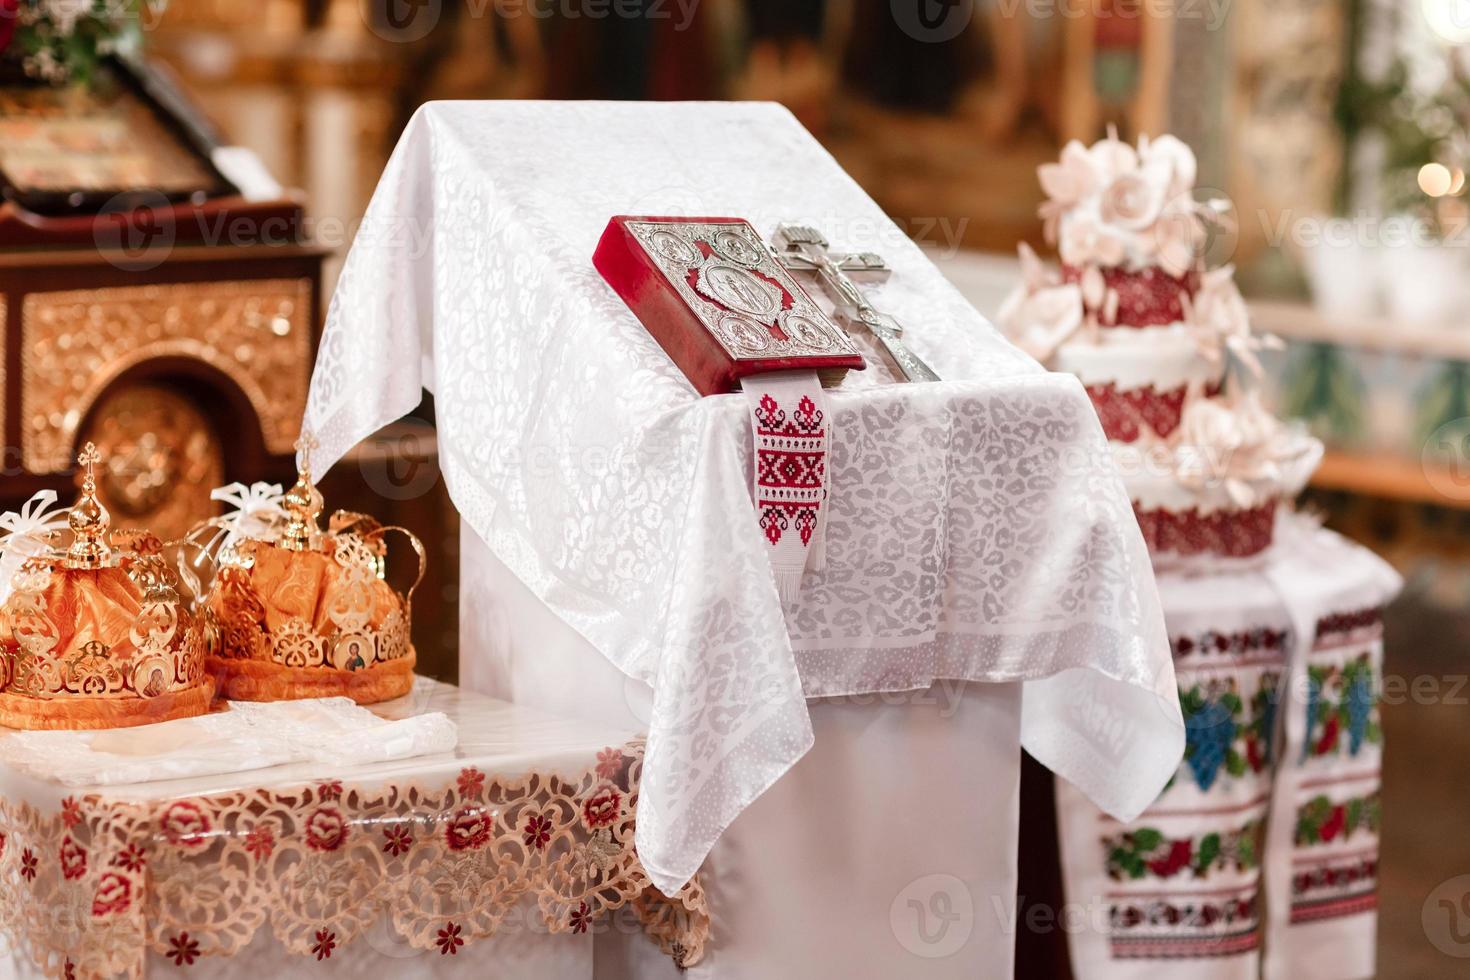 deux couronnes les mariages destinés à la cérémonie dans l'église orthodoxe. accessoires de mariage orthodoxes sainte bible et croix d'argent photo